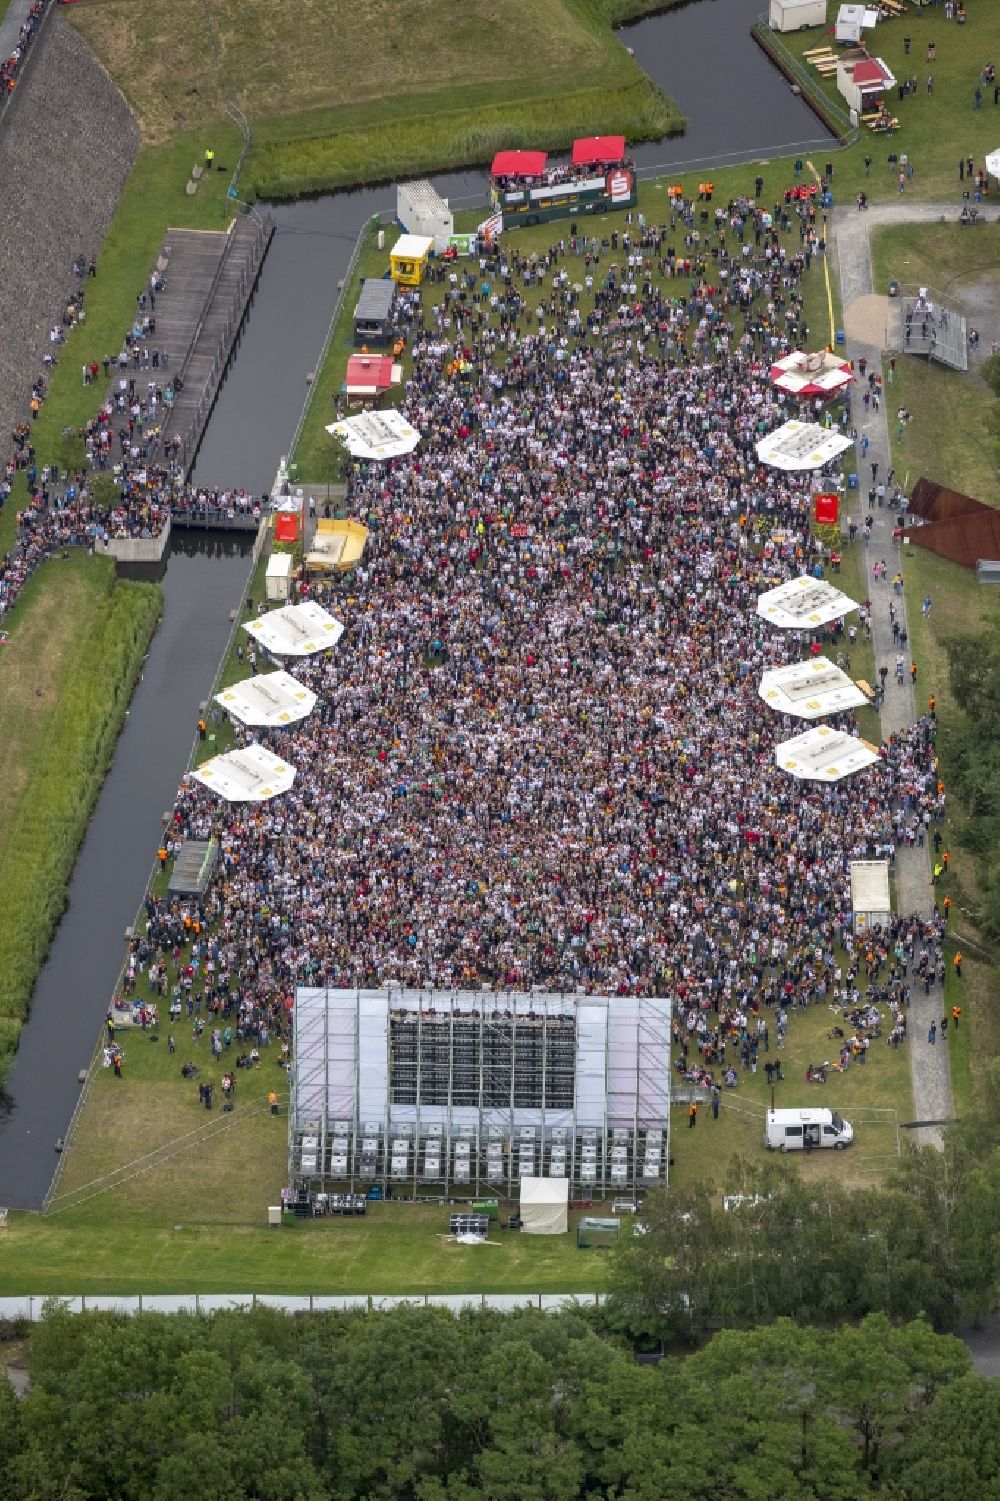 Luftbild Bochum - Public Viewing - Veranstaltung im Bochumer Westpark vor Industrieller Kulisse neben der Jahrhunderthalle anläßlich der Fussball WM 2014 in Bochum im Bundesland Nordrhein-Westfalen